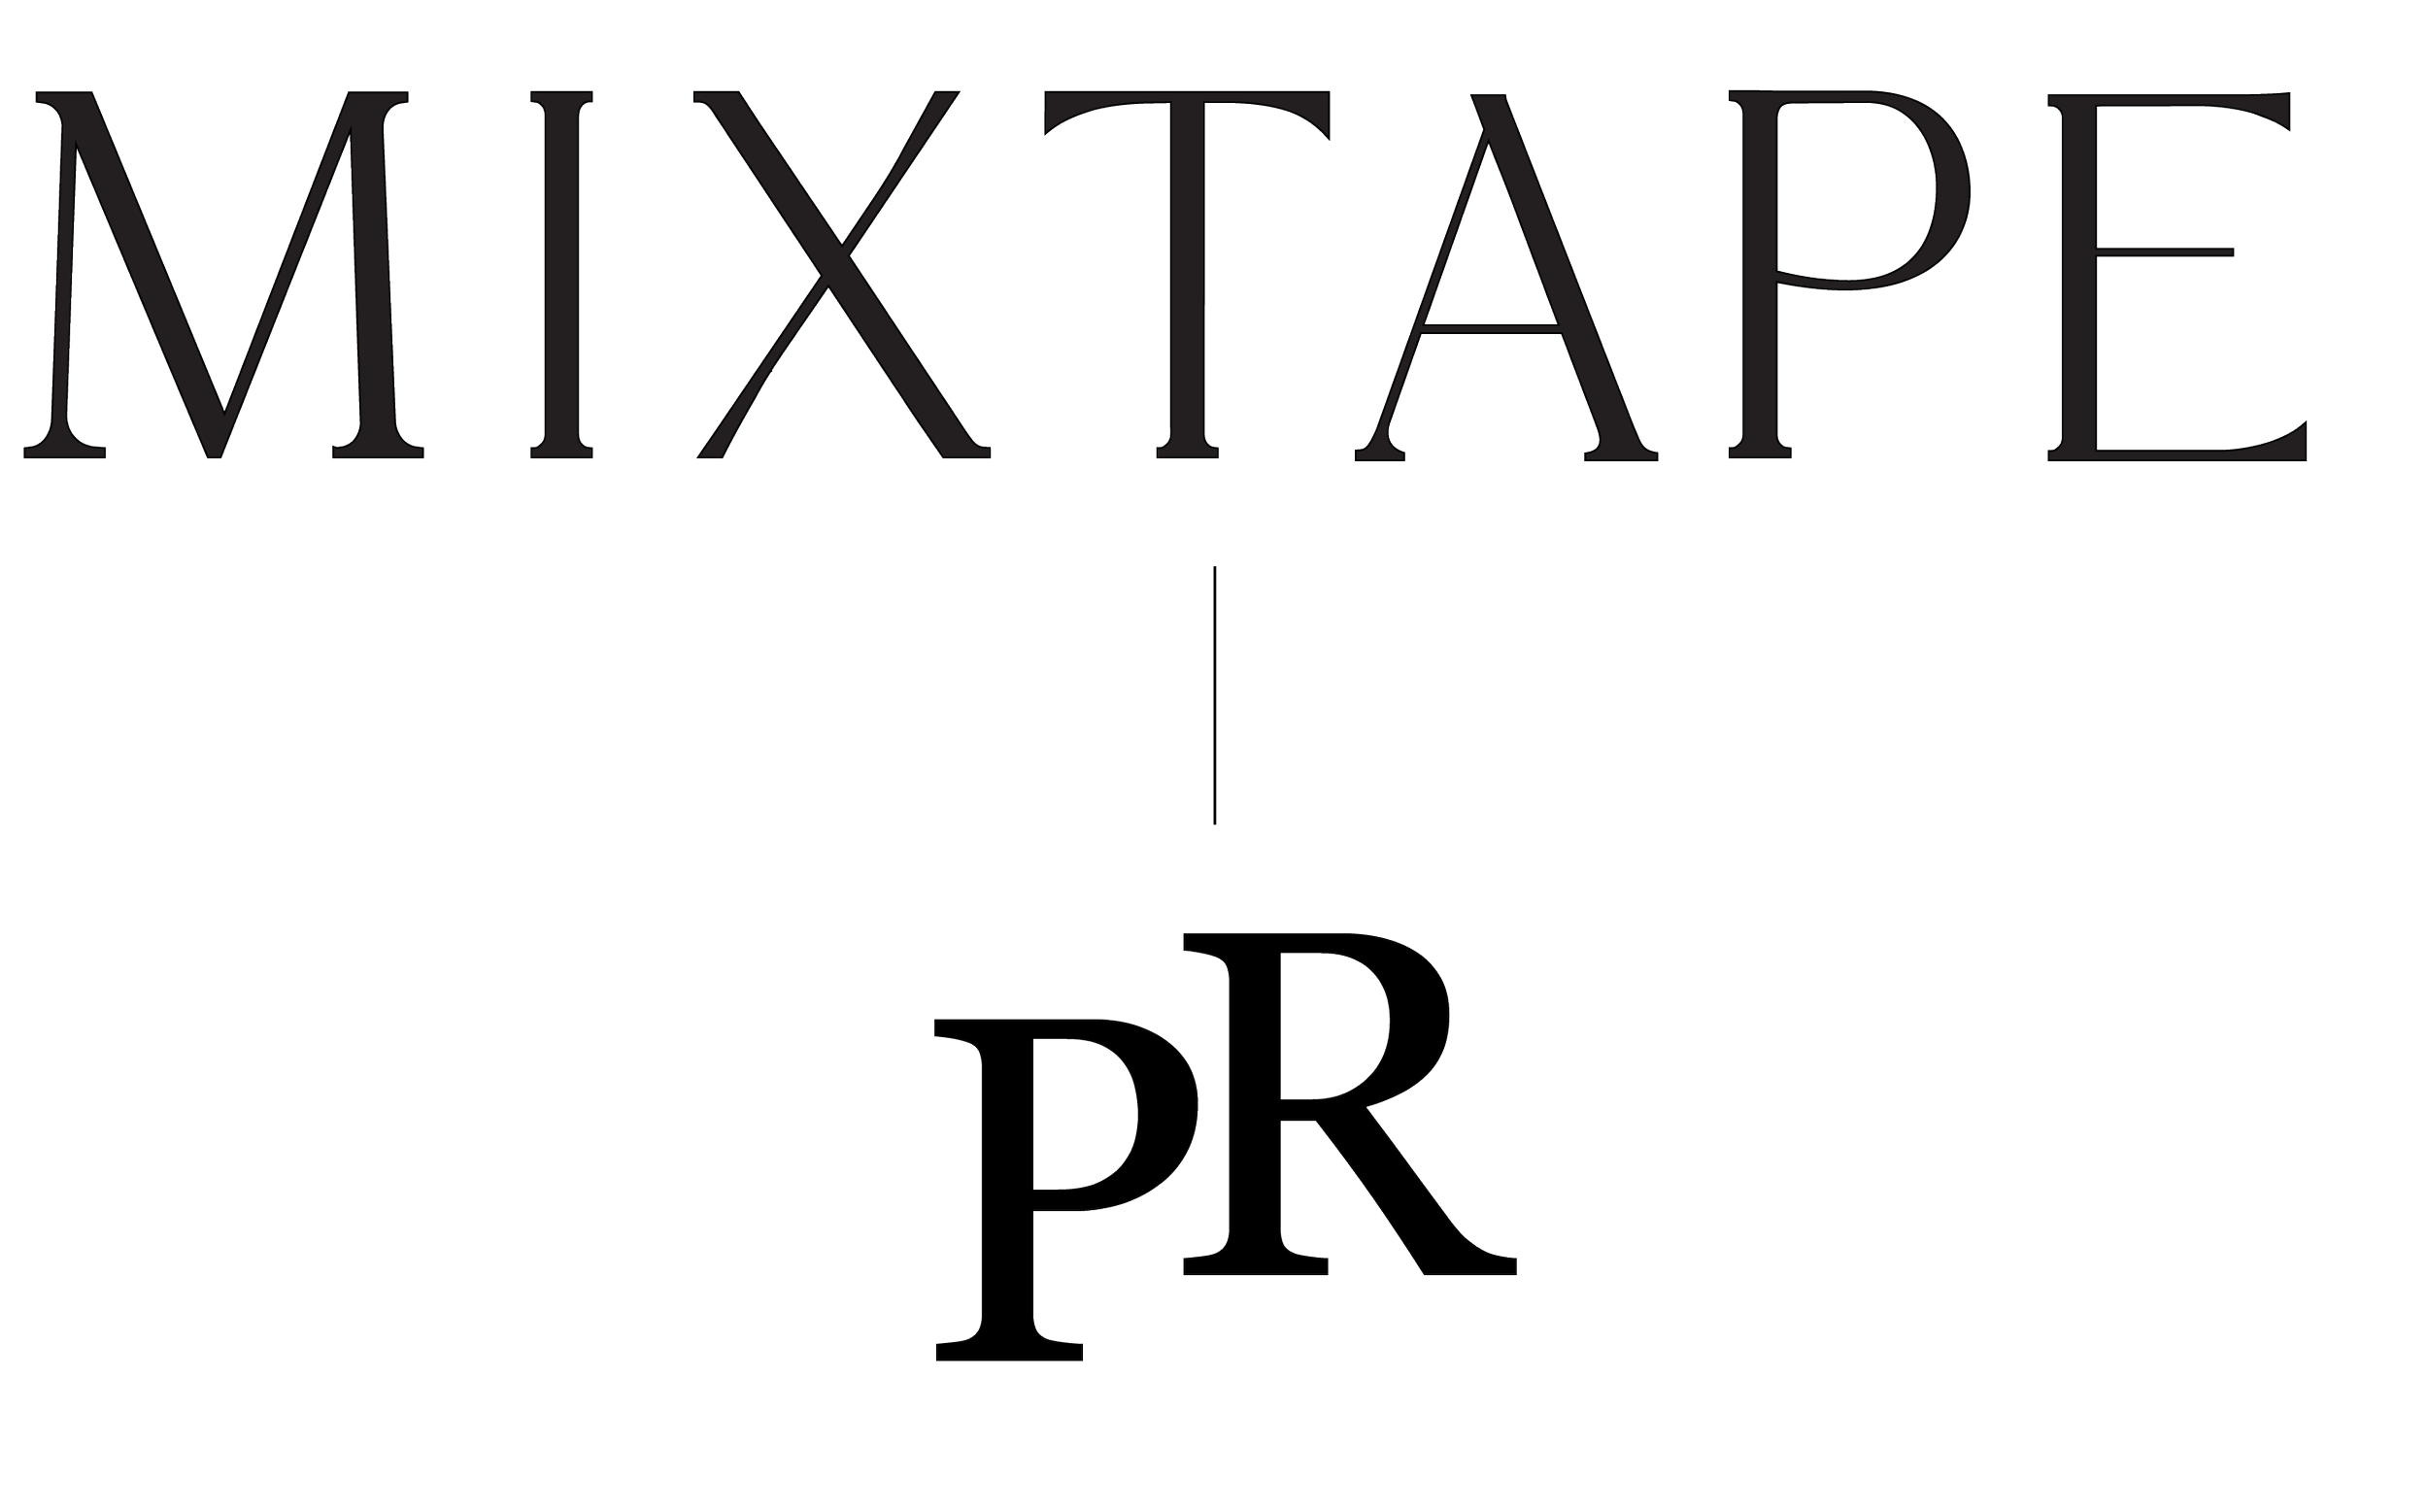 The Mixtape pr